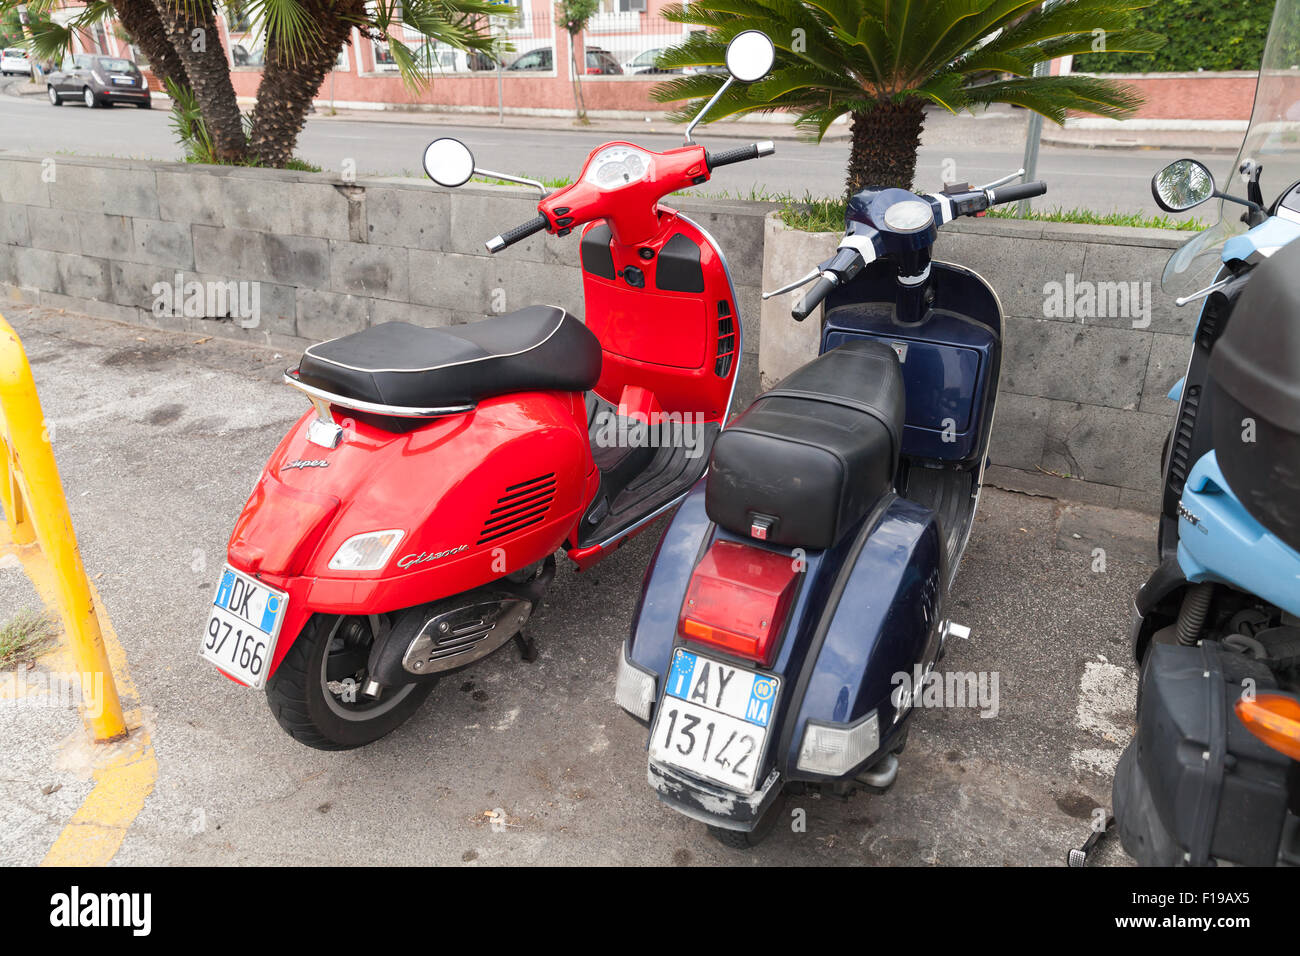 Gaeta, Italia - 15 agosto 2015: Classic Vespa scooter sta parcheggiato su una strada, vista posteriore Foto Stock